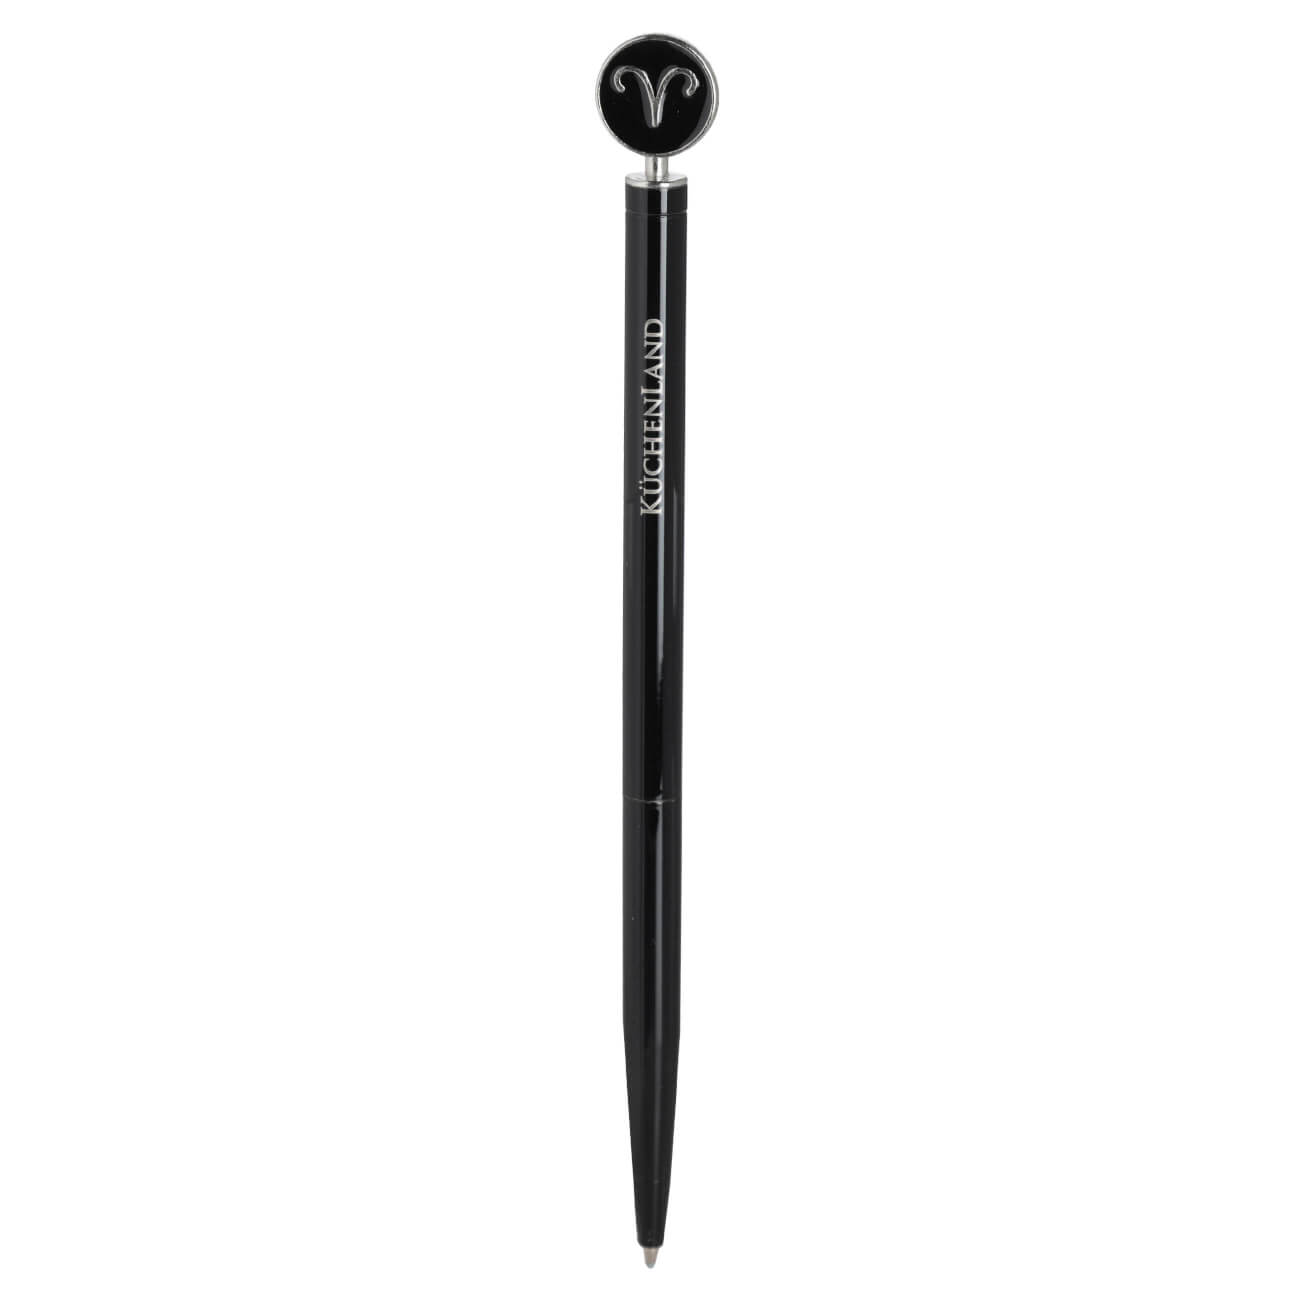 Ручка шариковая, 15 см, с фигуркой, сталь, черно-серебристая, Овен, Zodiac изображение № 1